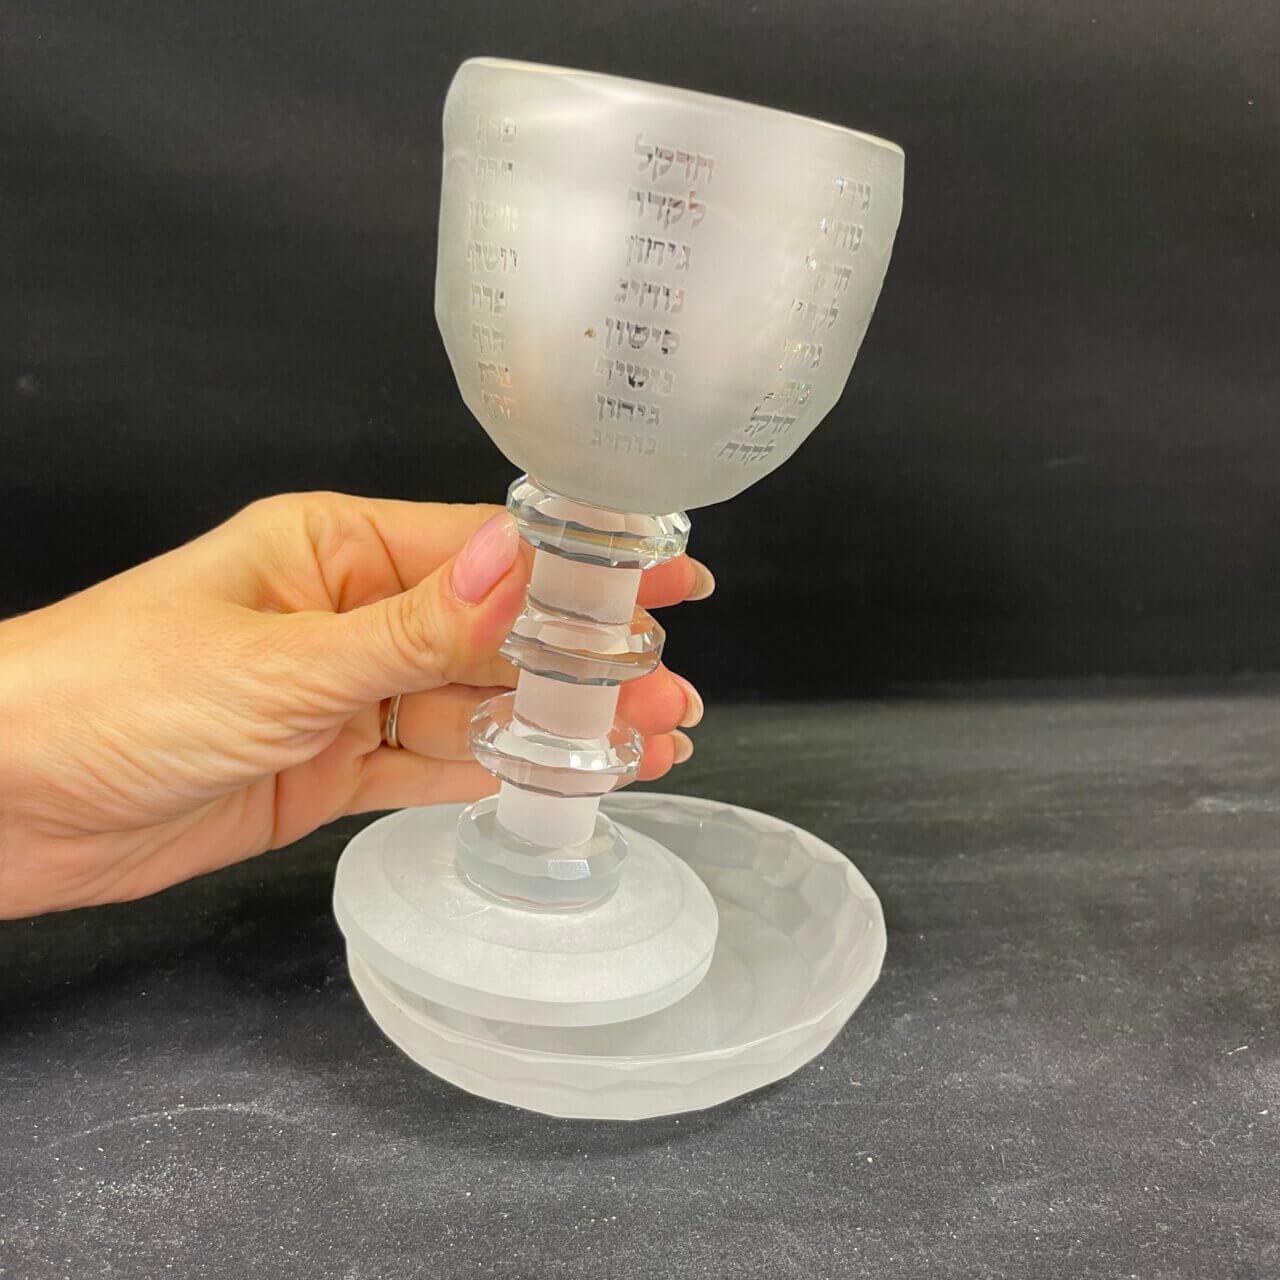 גביע קידוש חלבית “דגם גלים נהרות״